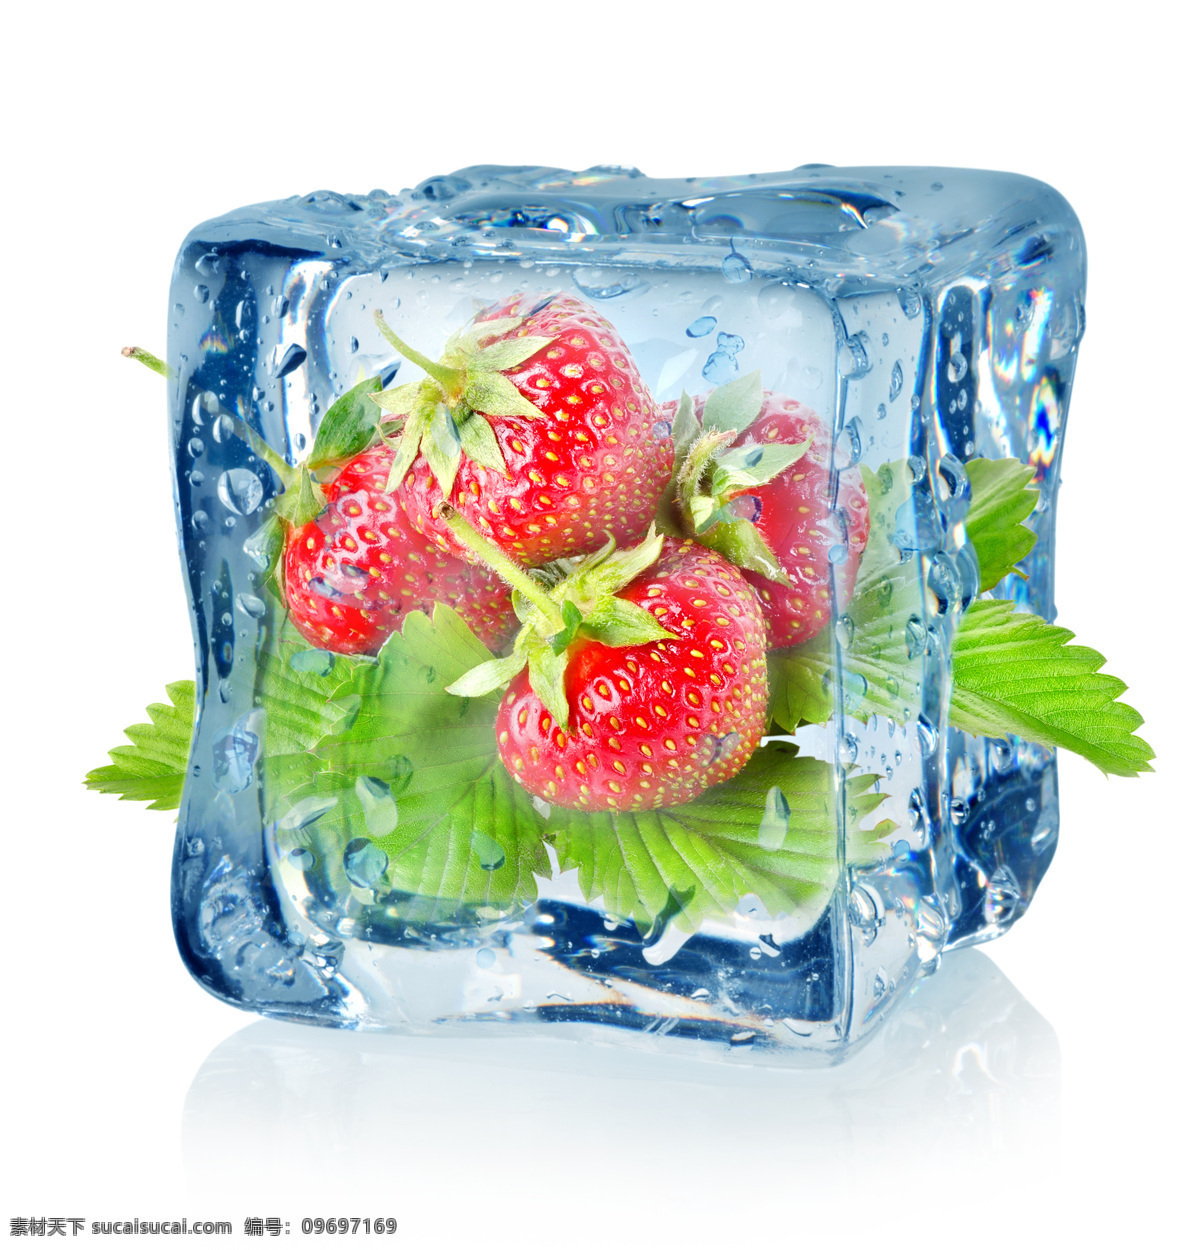 冰块 草莓 绿叶 生物世界 水滴 水果 水珠 冰 中 设计素材 模板下载 冰中草莓 结冰 新鲜水果